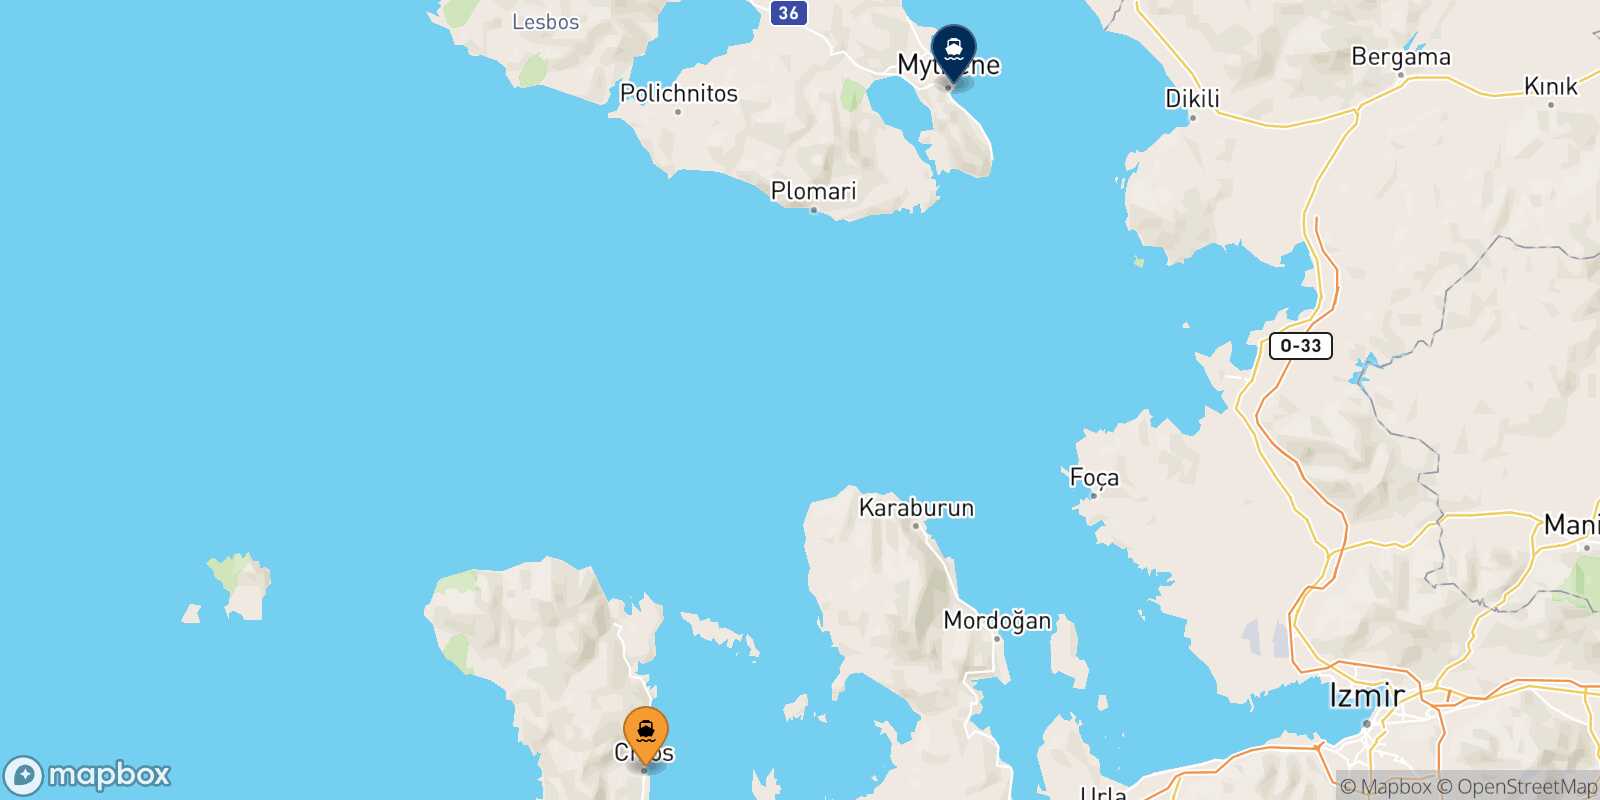 Mapa de la ruta Mesta Chios Mytilene (Lesvos)